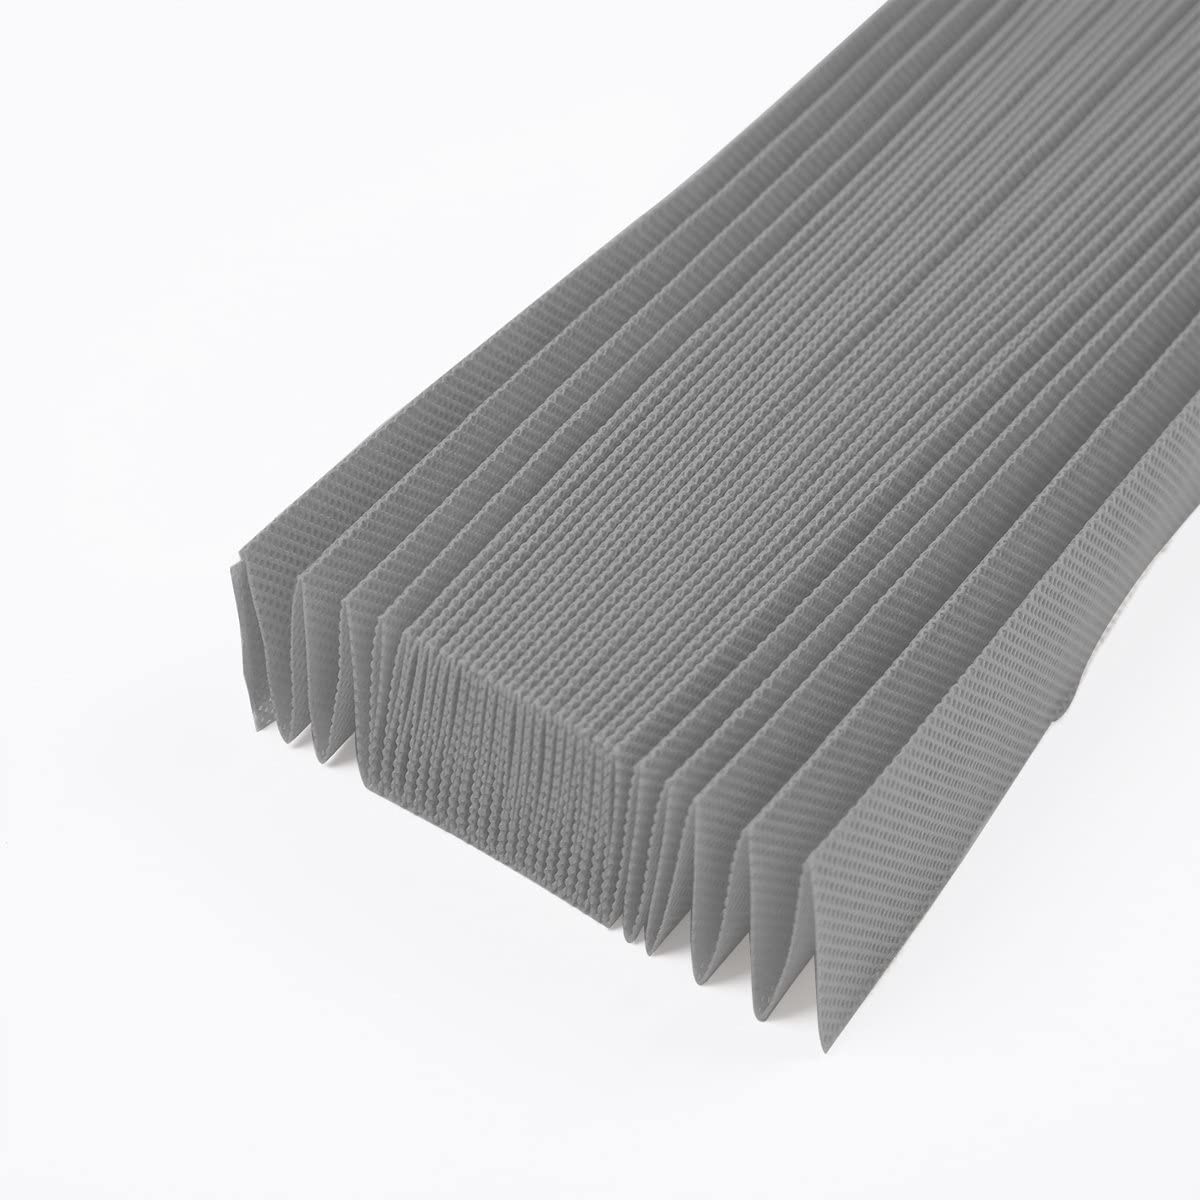 Бумажный абажур нового дизайна по отличной цене, бумажный абажур для временных жалюзи, прямой поставщик бумажного абажура в Китае